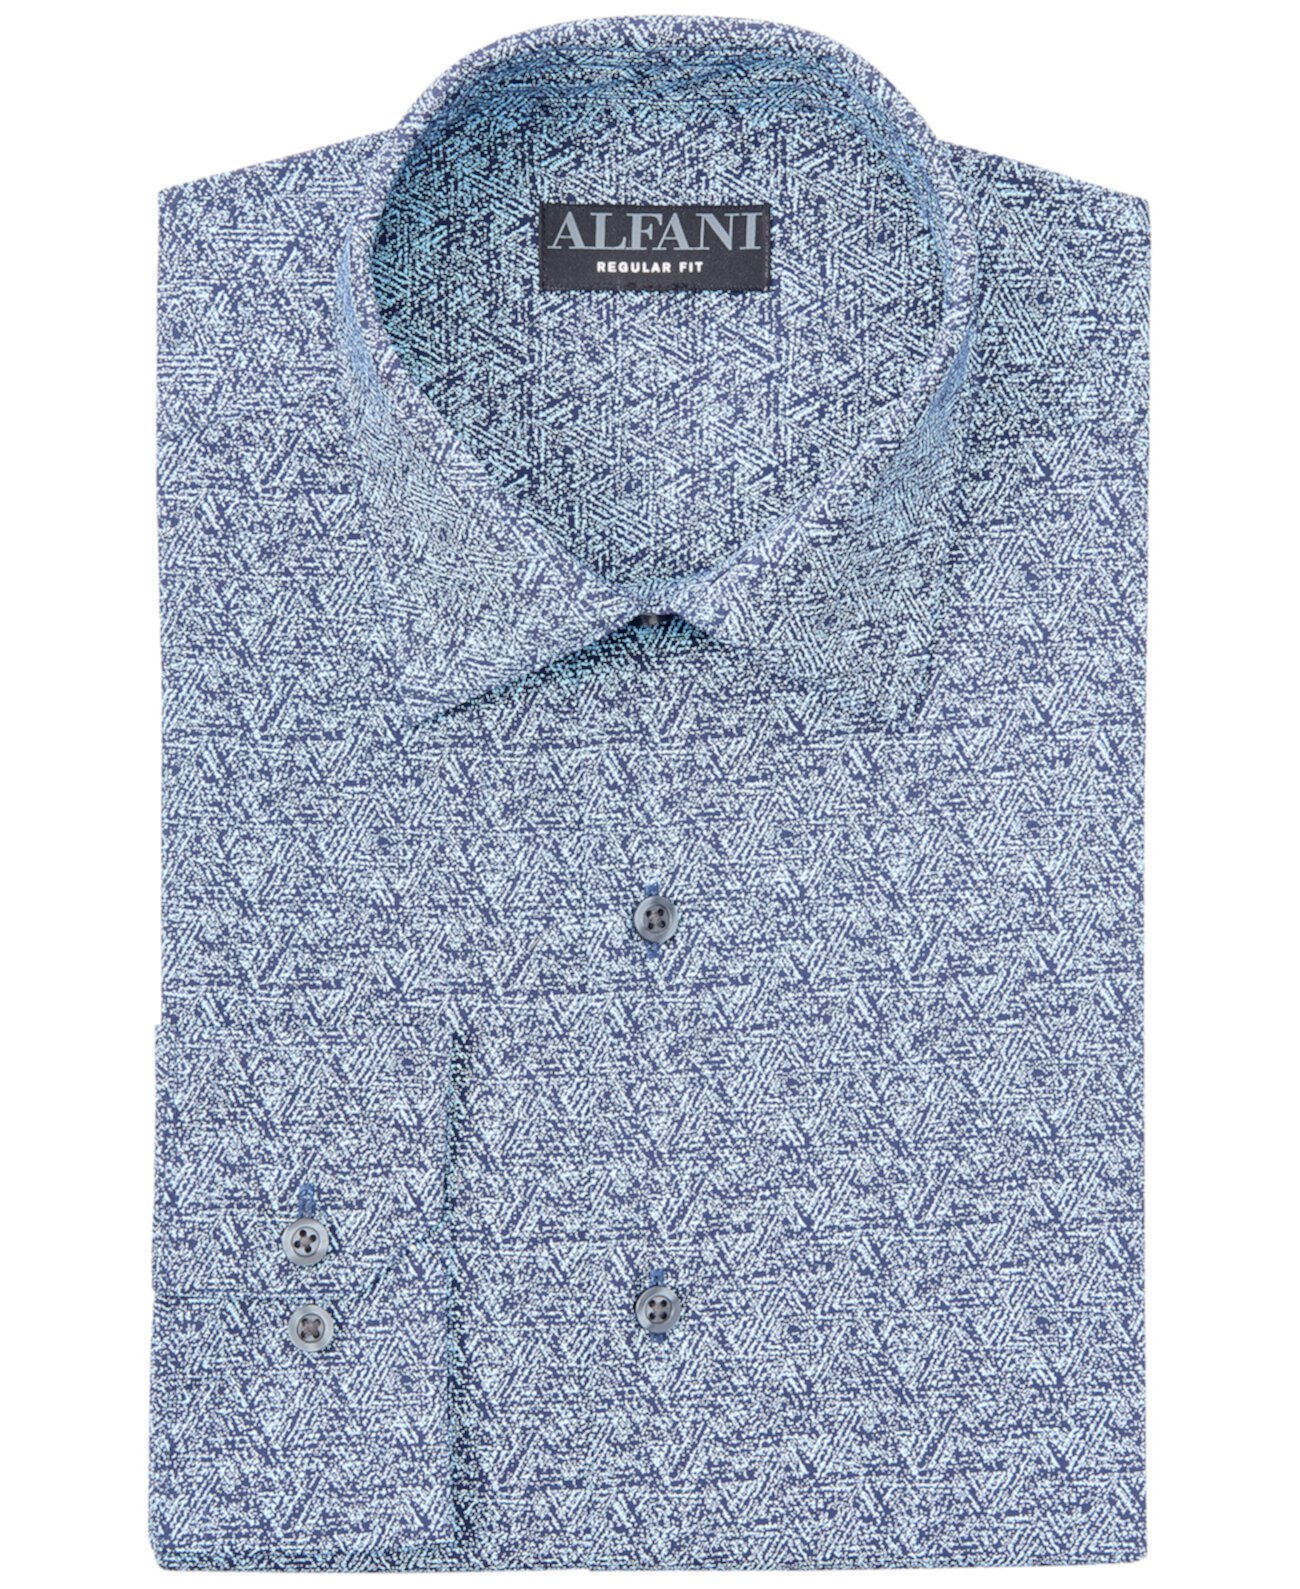 Мужская классическая / классическая классическая рубашка с треугольным текстурным принтом, создана для Macy's Alfani